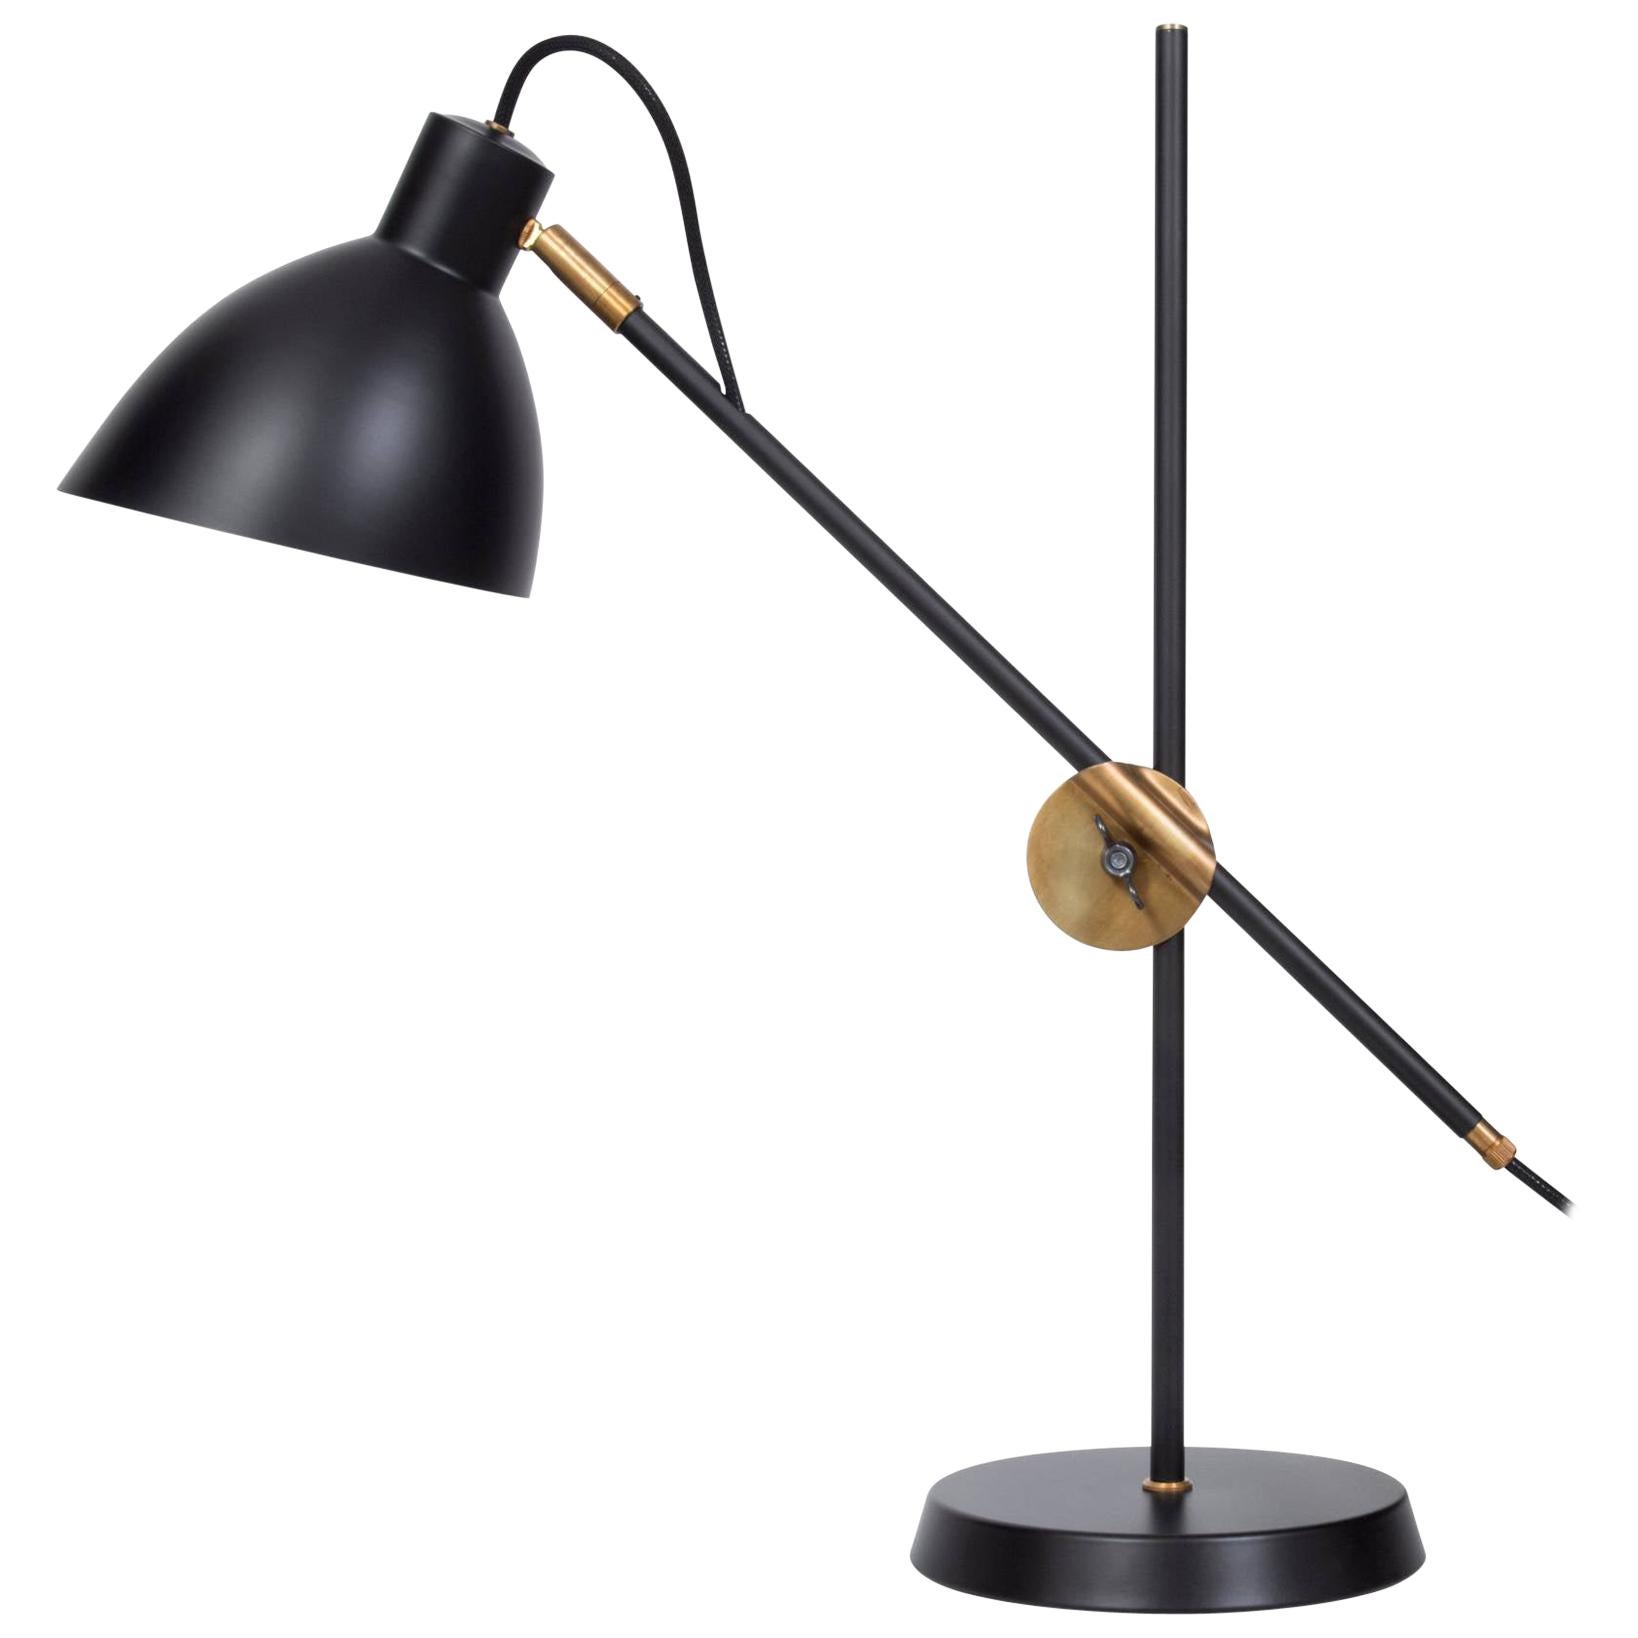 Lampe de table modèle KH#1 conçue par Konsthantverk en 1926 et fabriquée par eux-mêmes.

La production des lampes, des appliques et des lampadaires est réalisée de manière artisanale avec les mêmes matériaux et techniques que les premiers